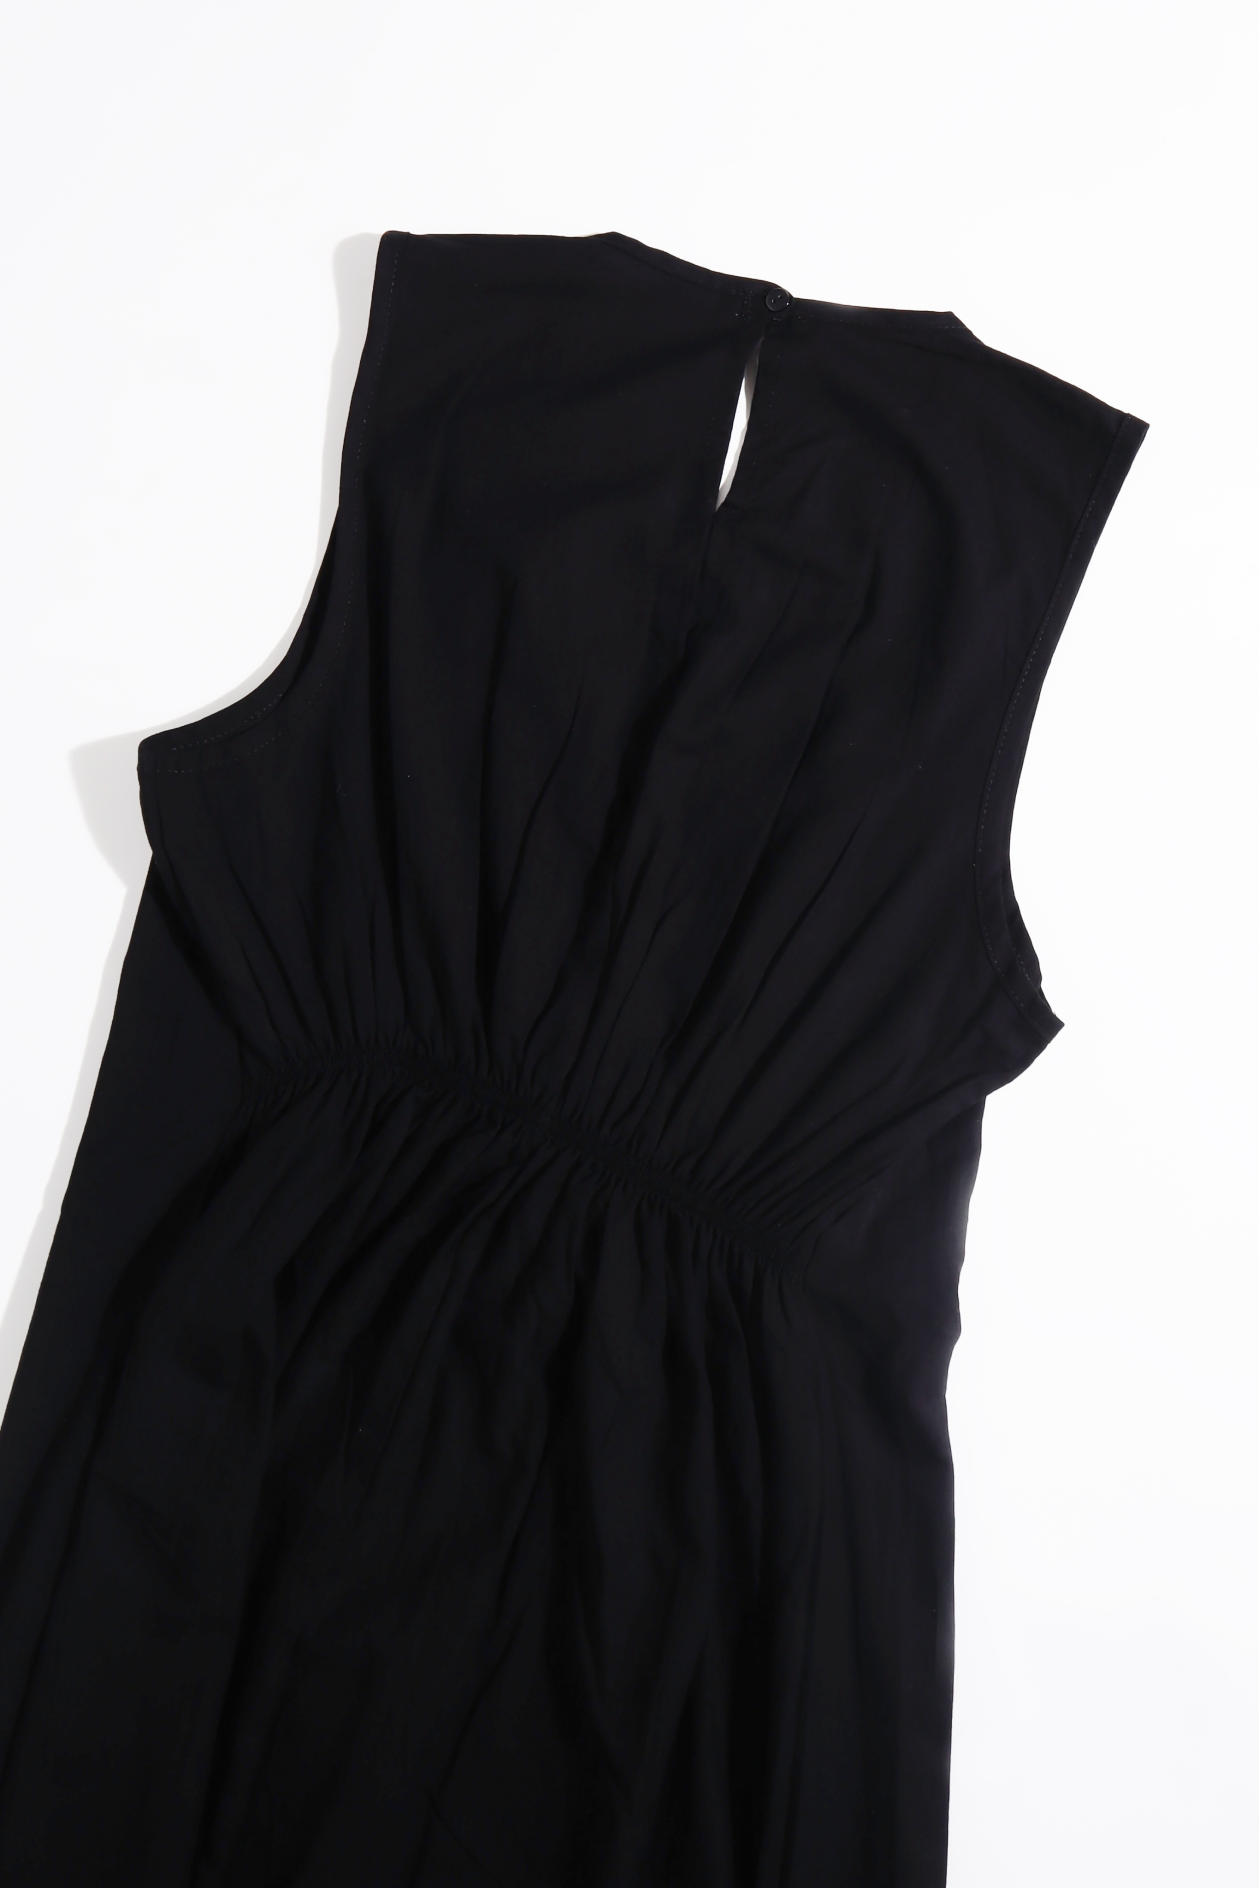 Dress hanging on hanger Cut sleeves  V neck